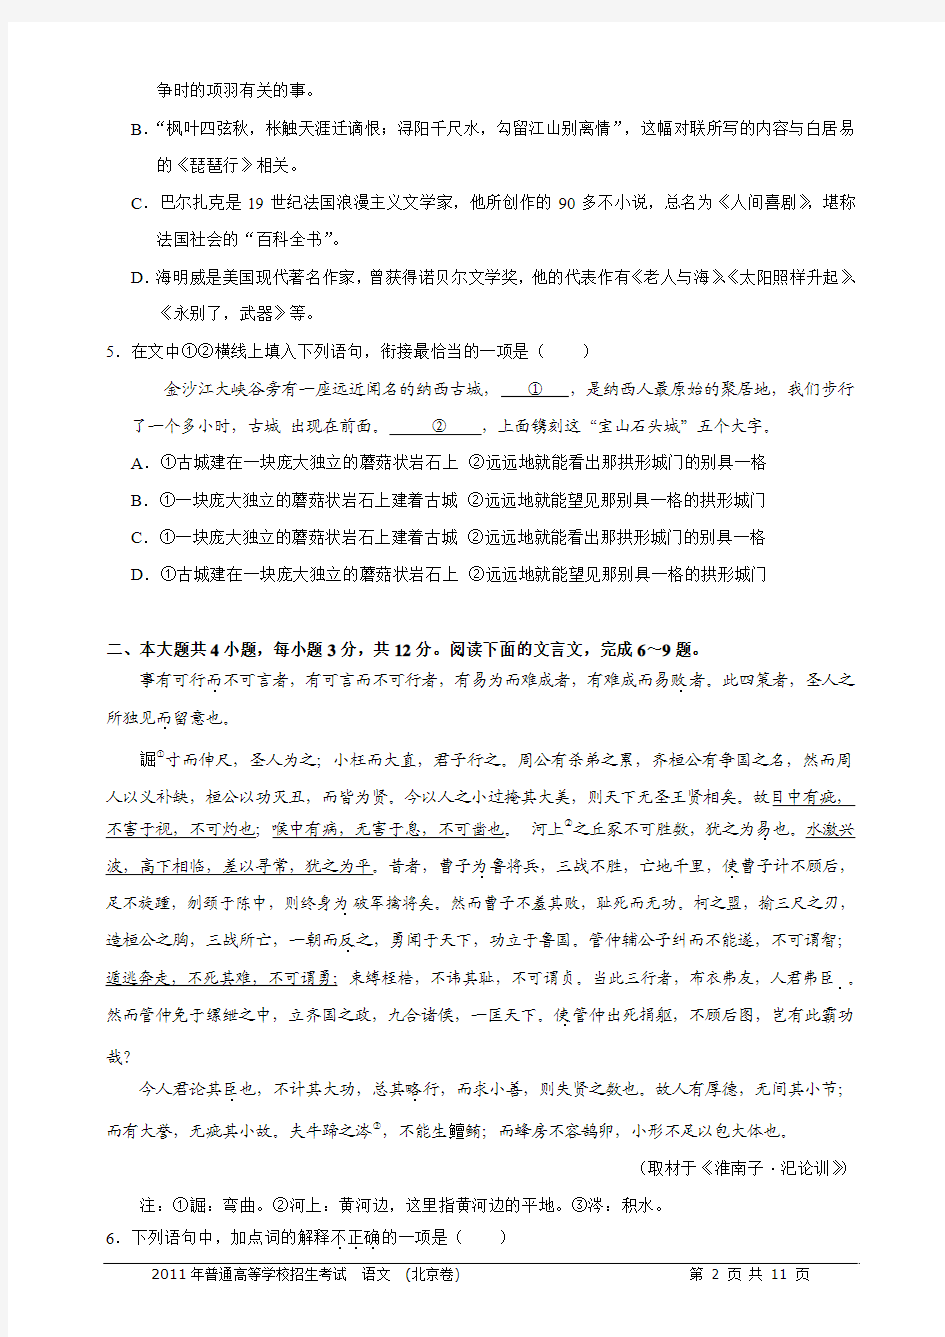 2011年高考语文试题及答案(北京卷)